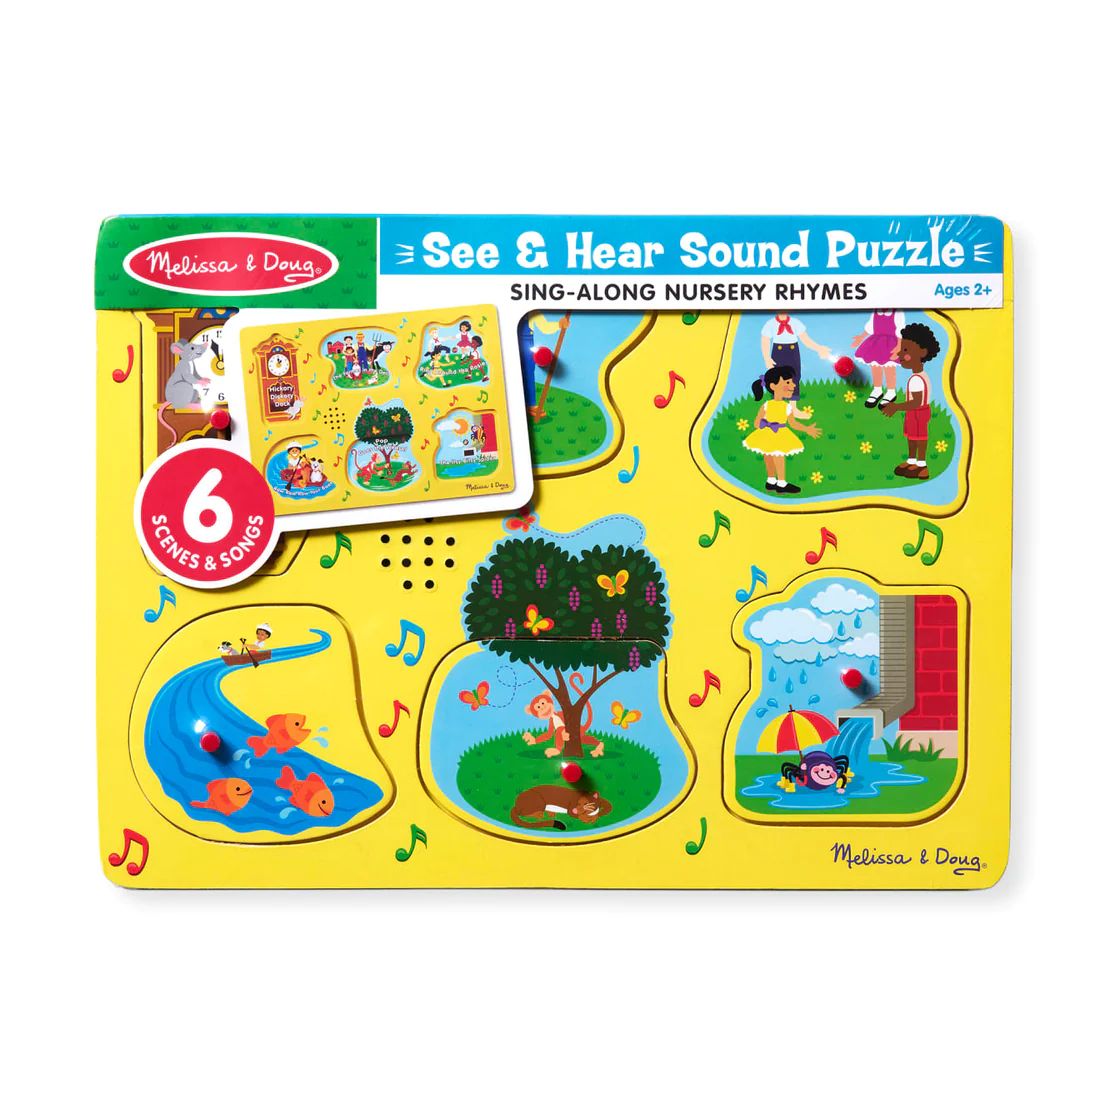 [มีเสียง8ชิ้น] รุ่น 735 ชุดพัซเซิลมีเสียง รุ่นเพลงกล่อม Melissa and Doug  Sing-Along Nursery Rhymes Sound Puzzle